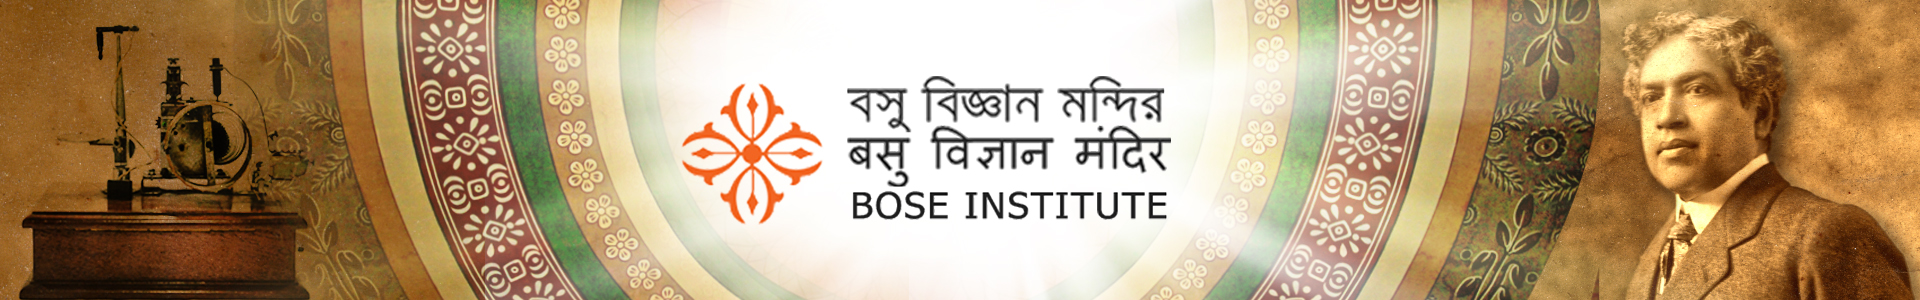 Logo of Bose Institute